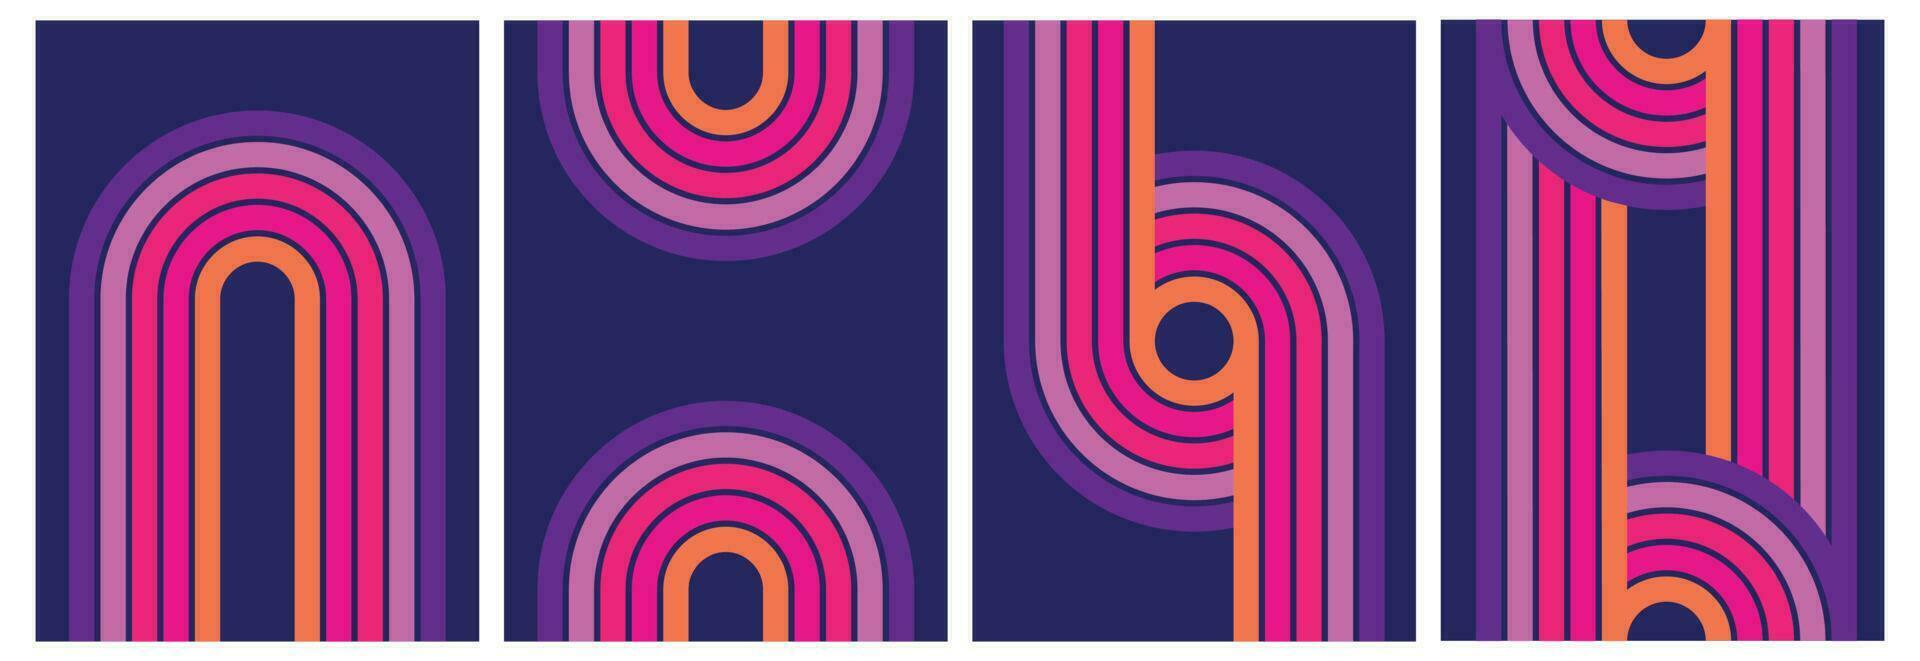 retro futurista abstrato iridescente iridescente fundo conjunto dentro Anos 70 estilo. colorida papel de parede com uma ondulado arco Iris dentro brilhante azul, roxo, vermelho, amarelo cores. vintage curvado listras e linhas backgro vetor